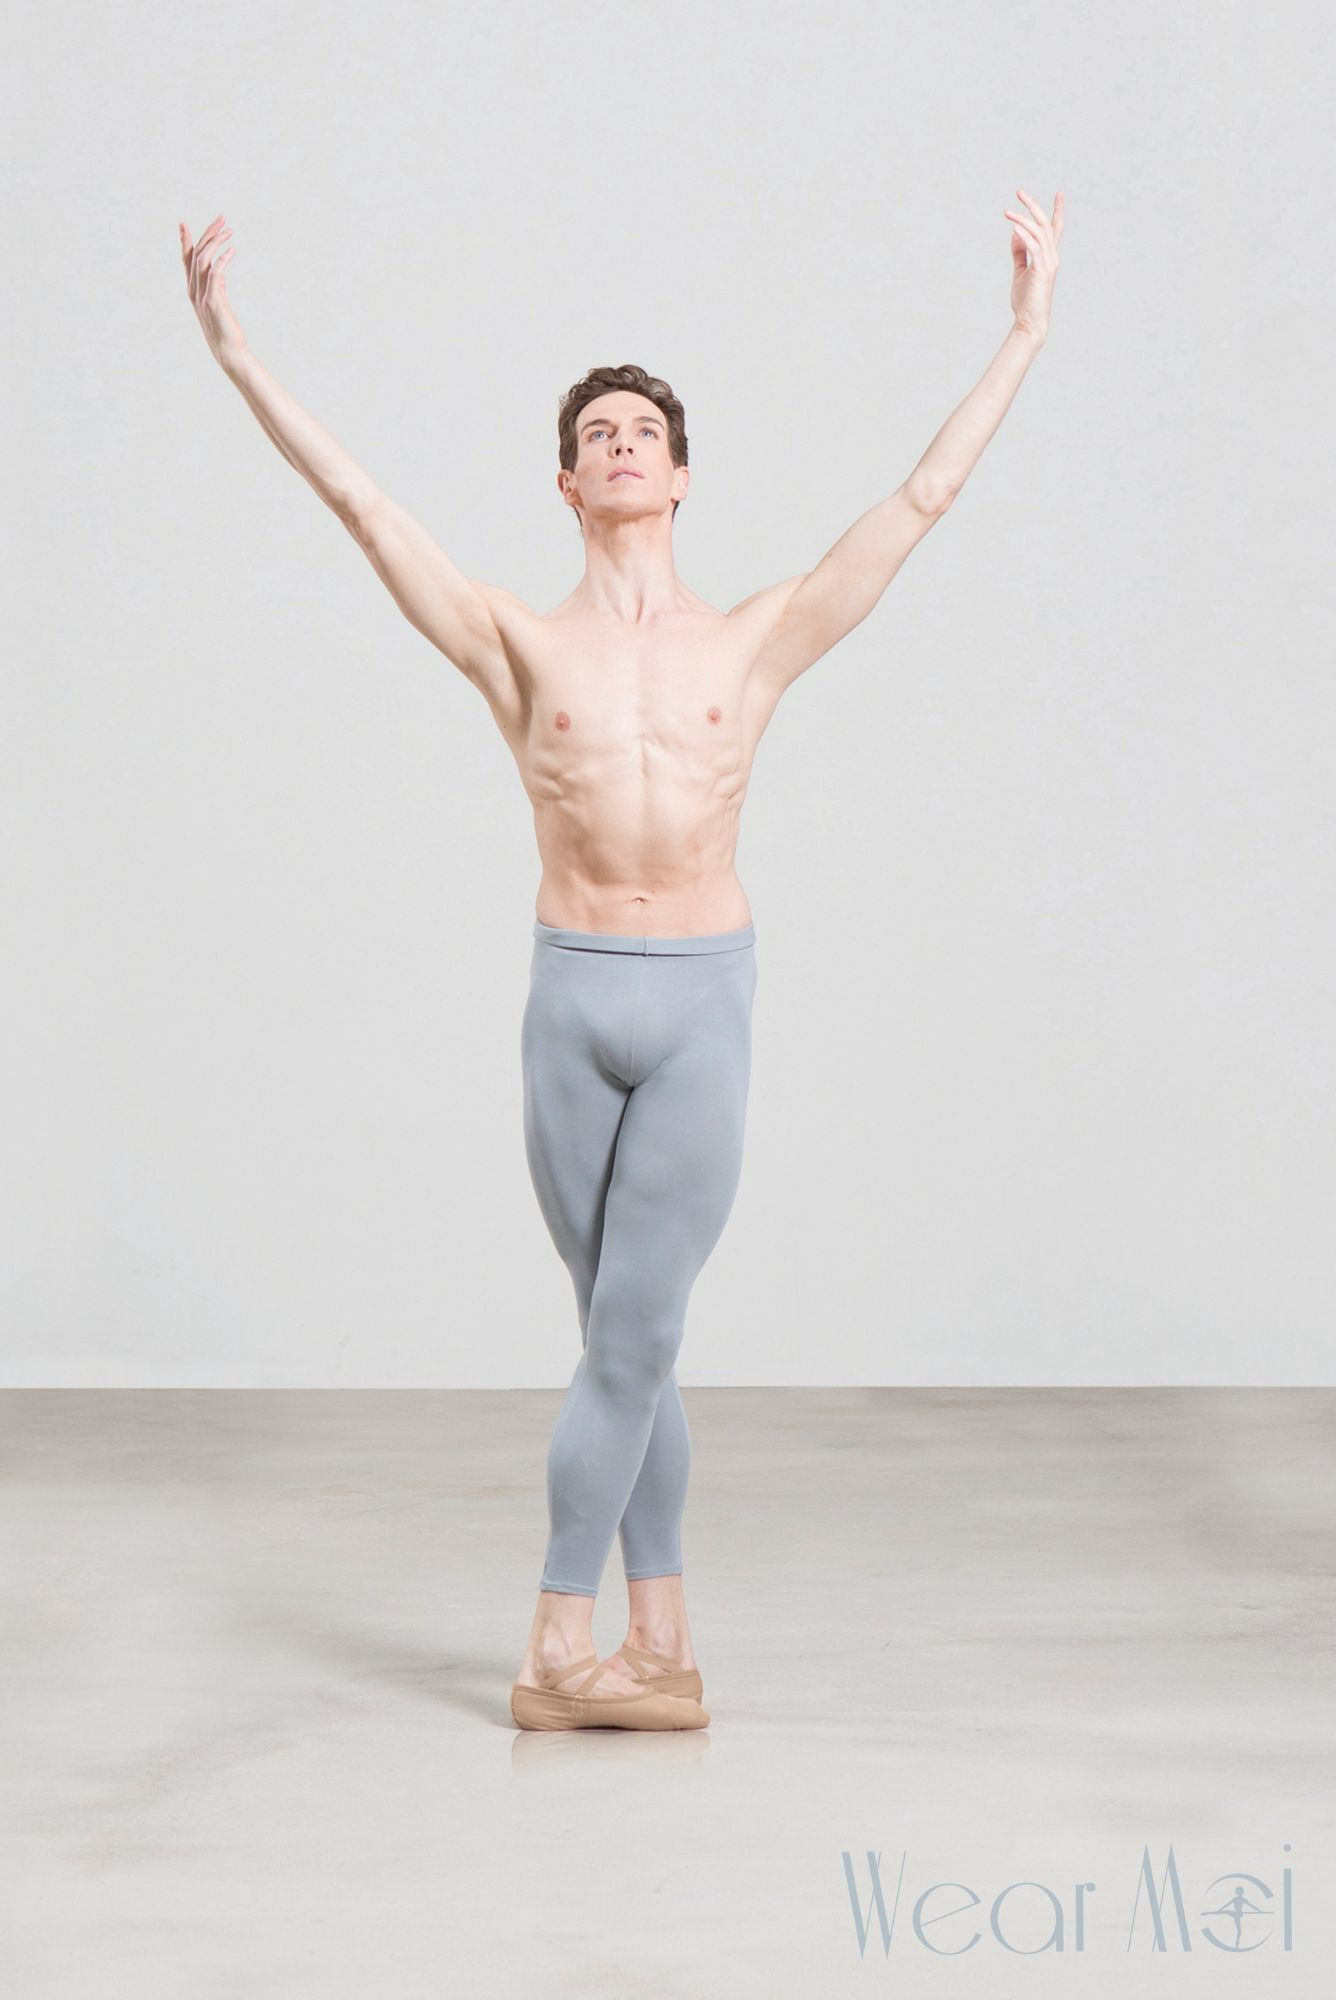 Wear Moi ballet footless white tights for men - Mademoiselle Danse